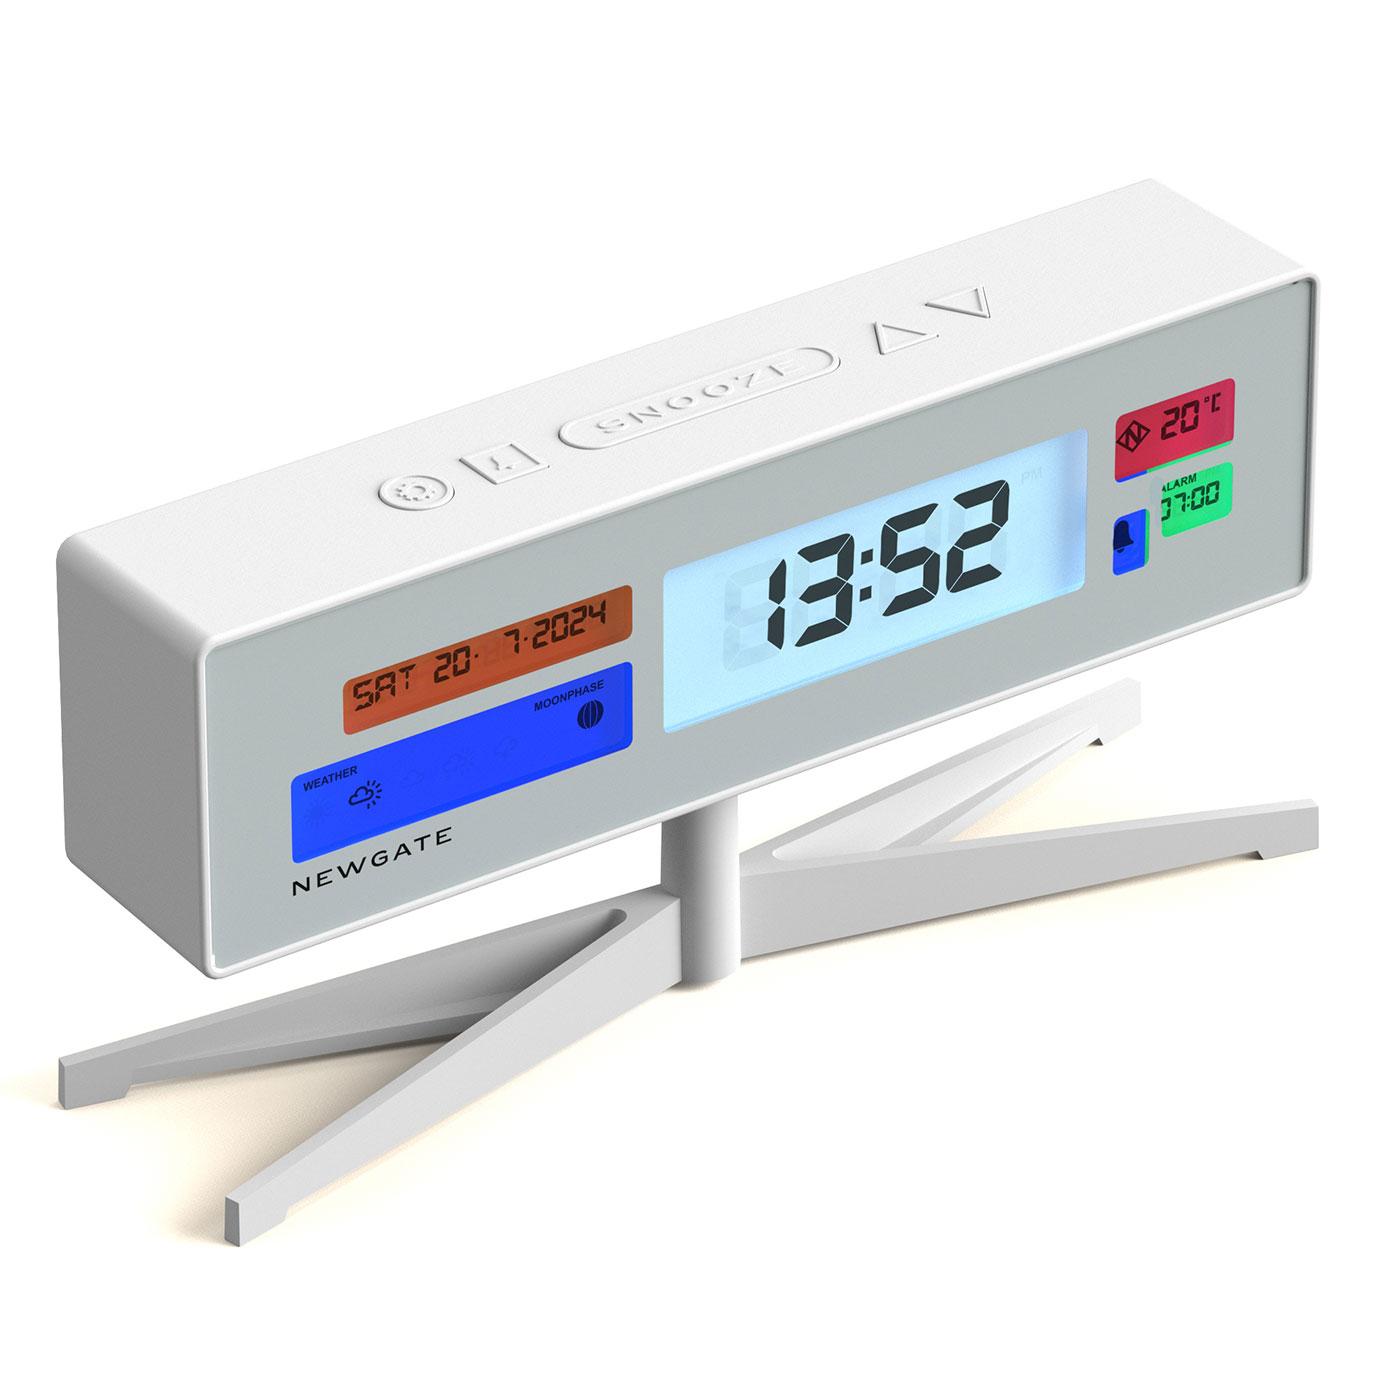 Supergenius NEWGATE Retro LCD Digital Alarm Clock 